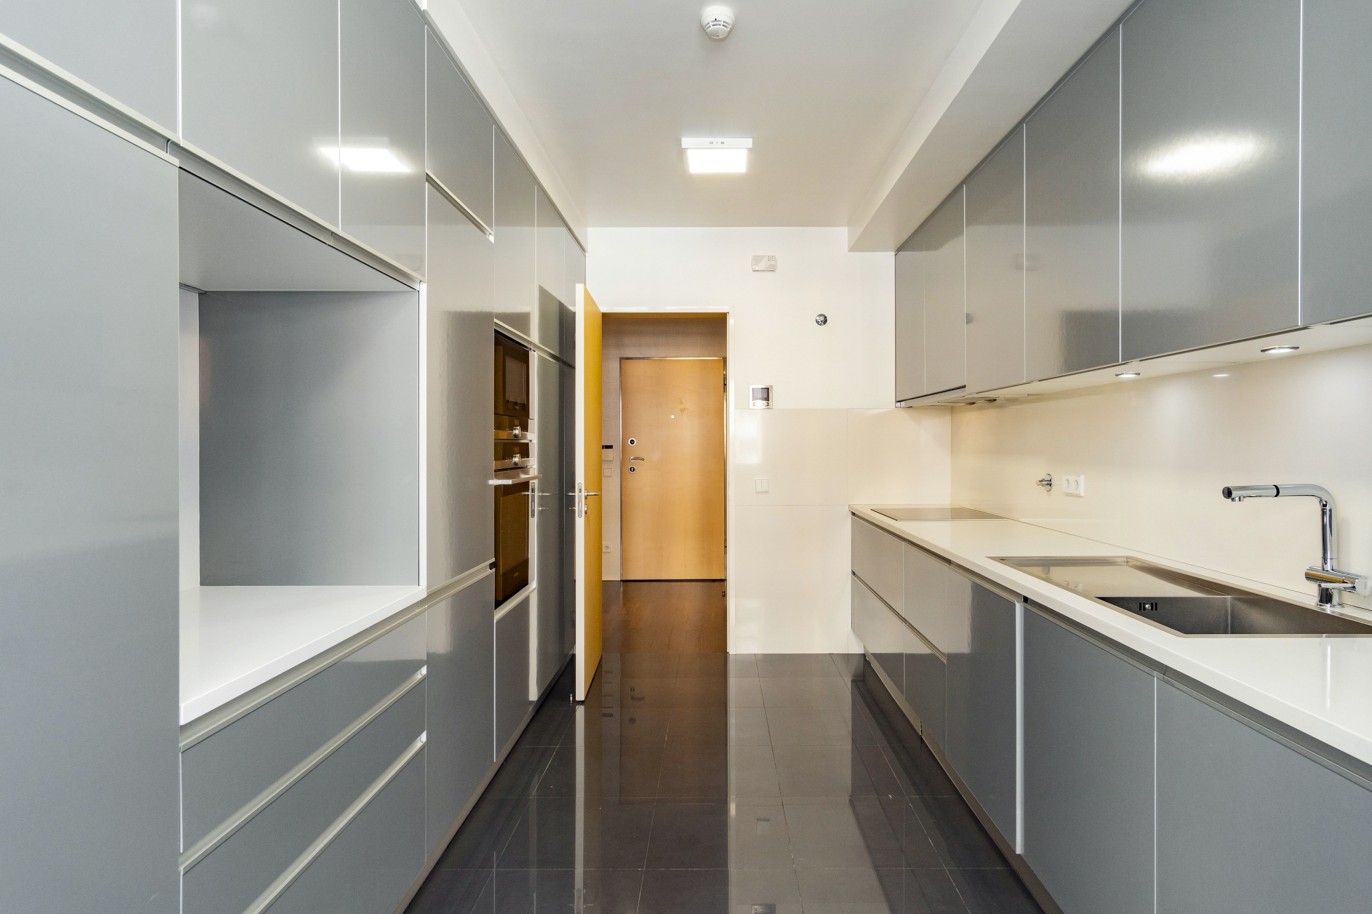 3 Bedroom Duplex Apartment with balcony, for sale, in Boavista, Porto, Portugal_217708